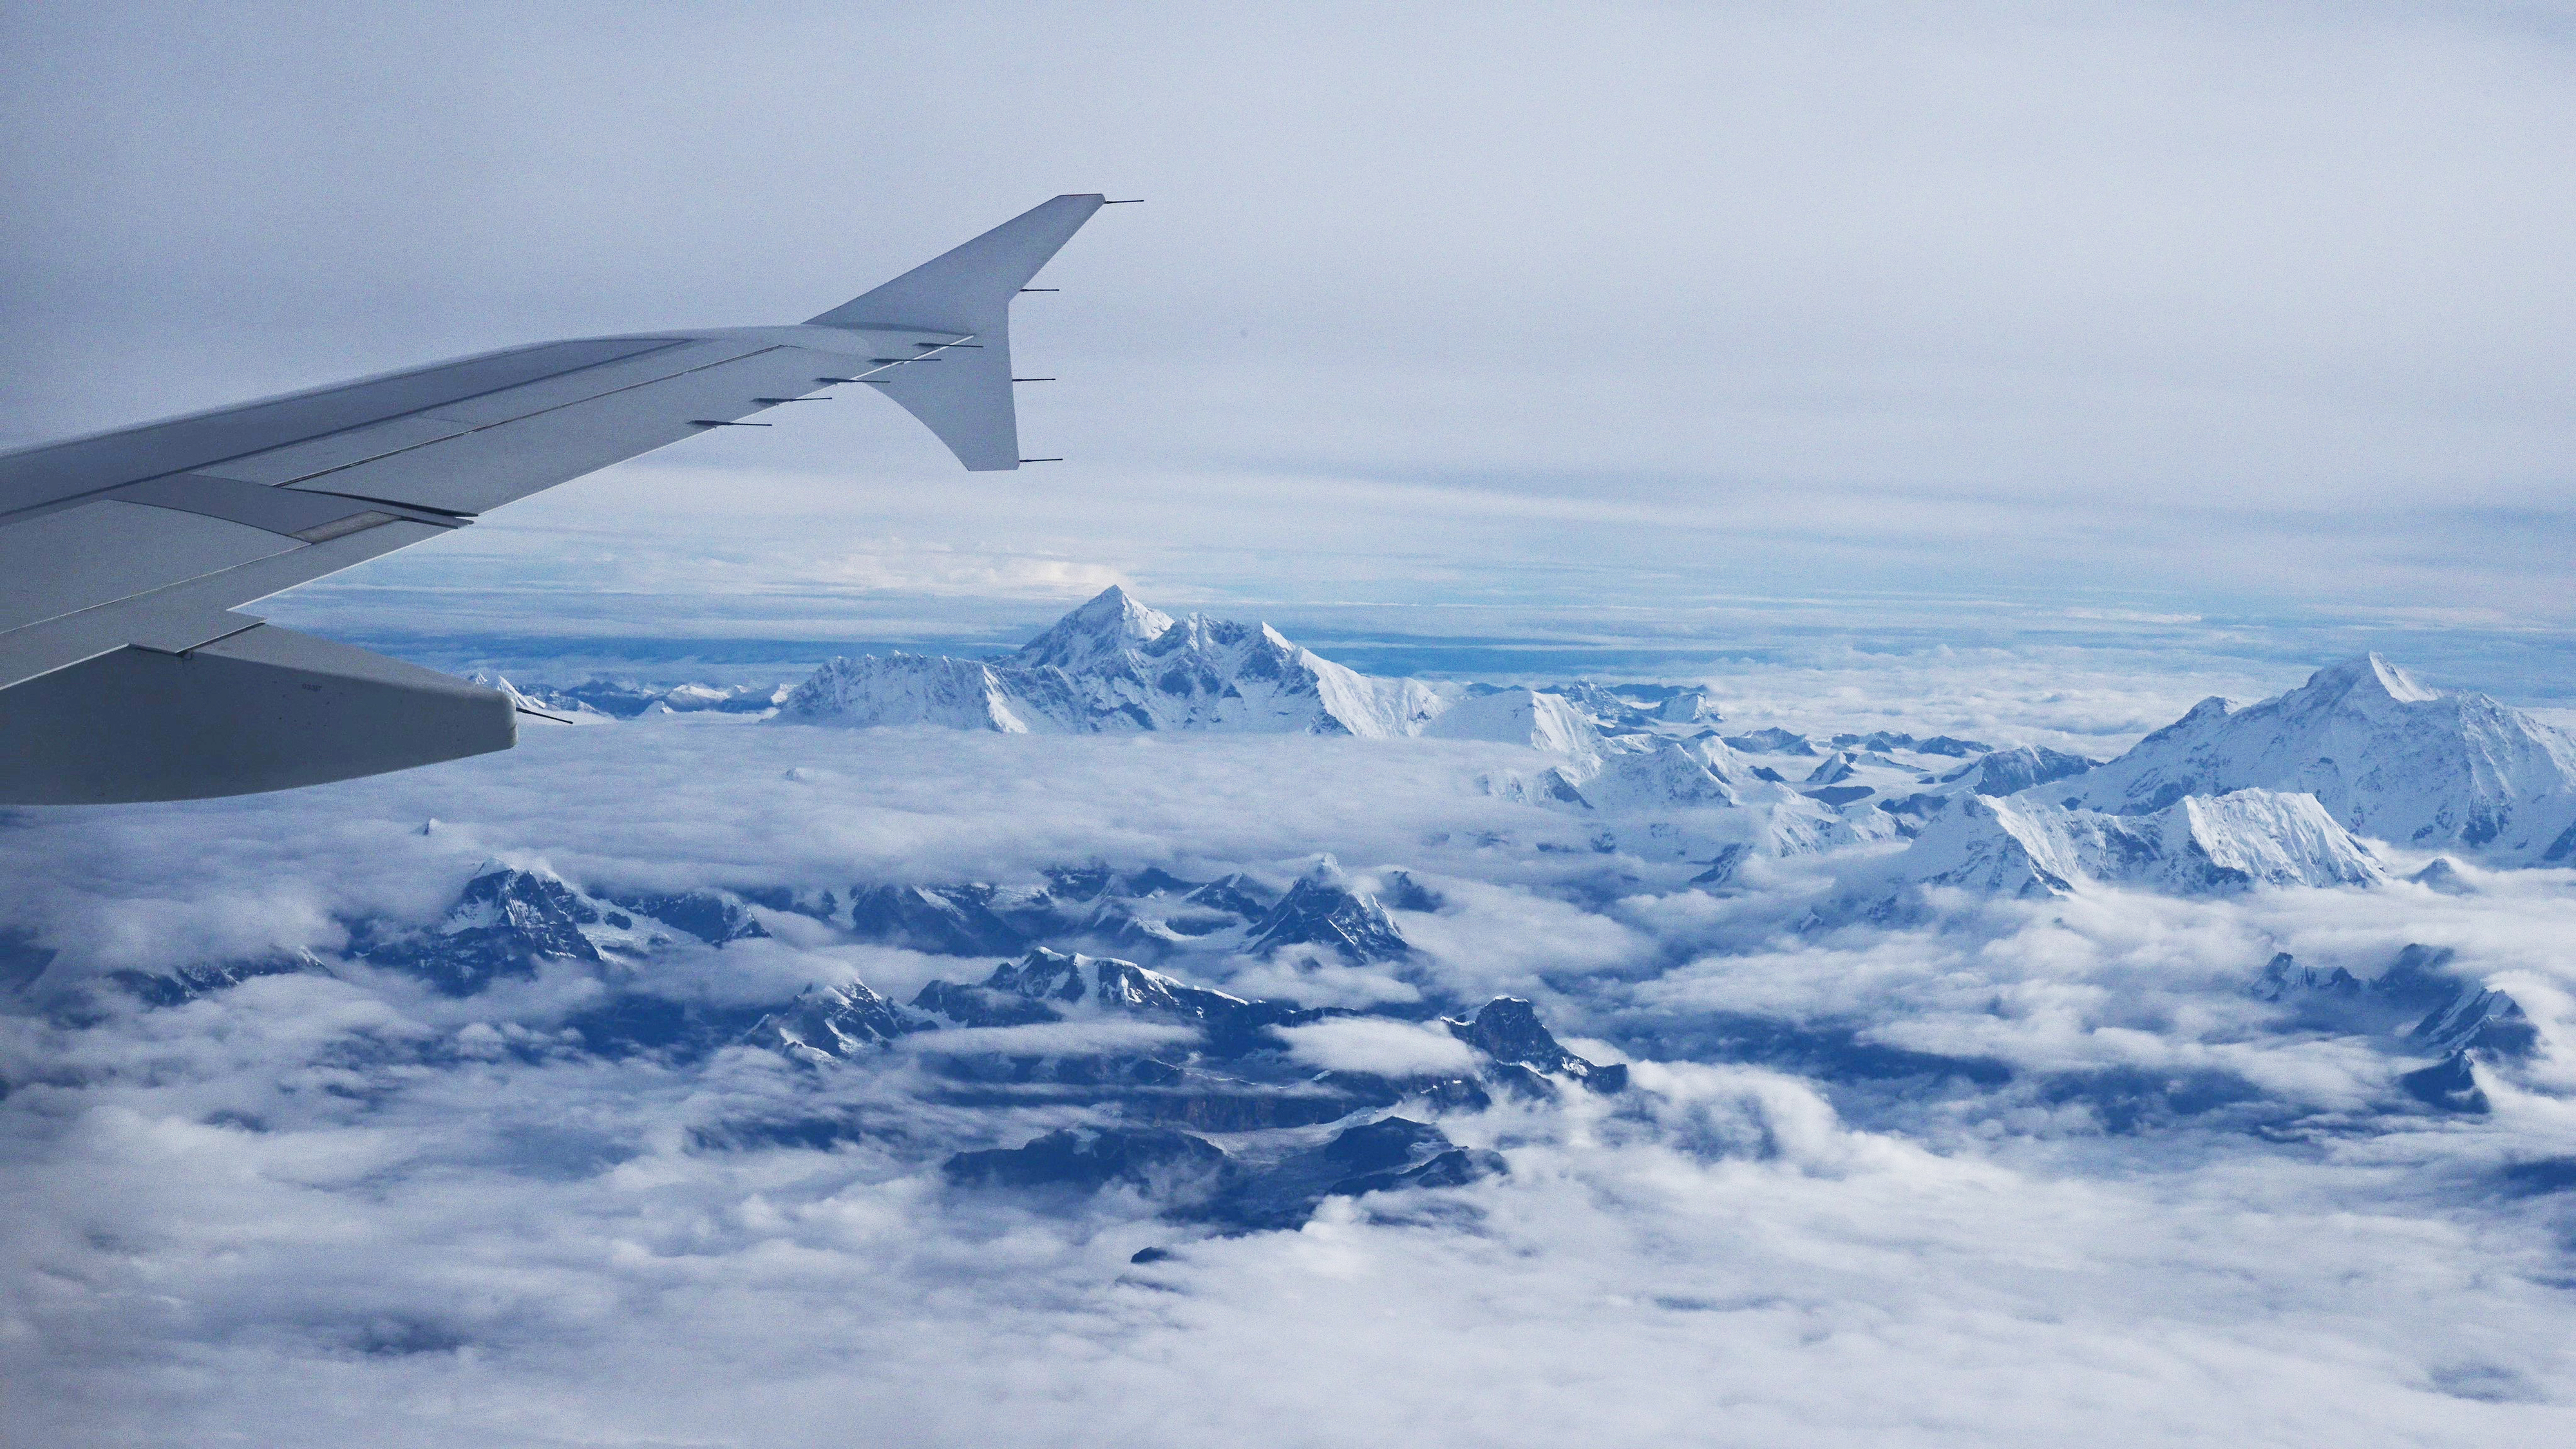 하늘에서 본 히말라야산맥. 비행기 날개 끝 바로 아래 있는 피라미드 모양의 봉우리가 지구 최고봉(8848m) 에베레스트다. 부탄 파로 공항을 오가는 길엔 이처럼 극적인 풍경이 함께한다.